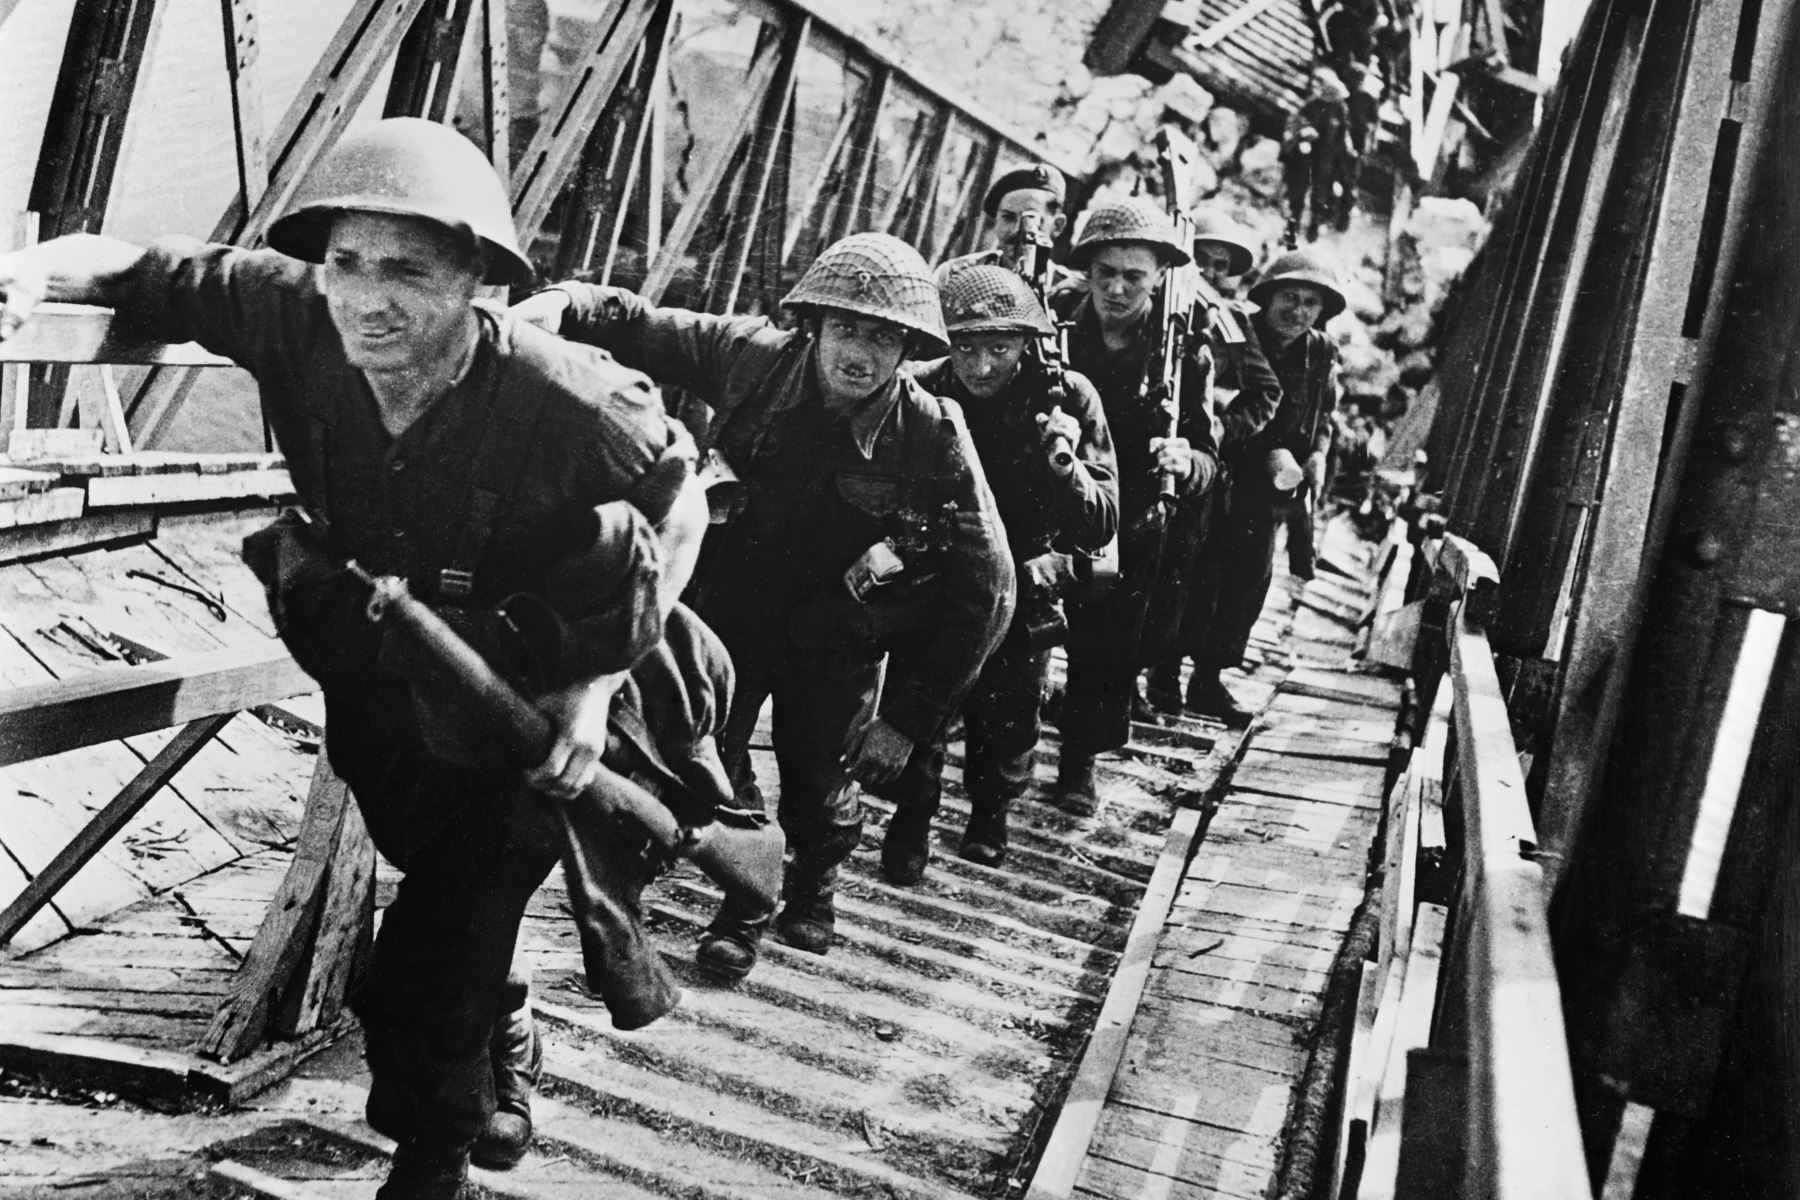 Imagen tomada en junio de 1944 que muestra a los soldados británicos de las fuerzas aliadas durante la operación de aterrizaje de Normandía como parte de la Segunda Guerra Mundial. 
Foto:AFP